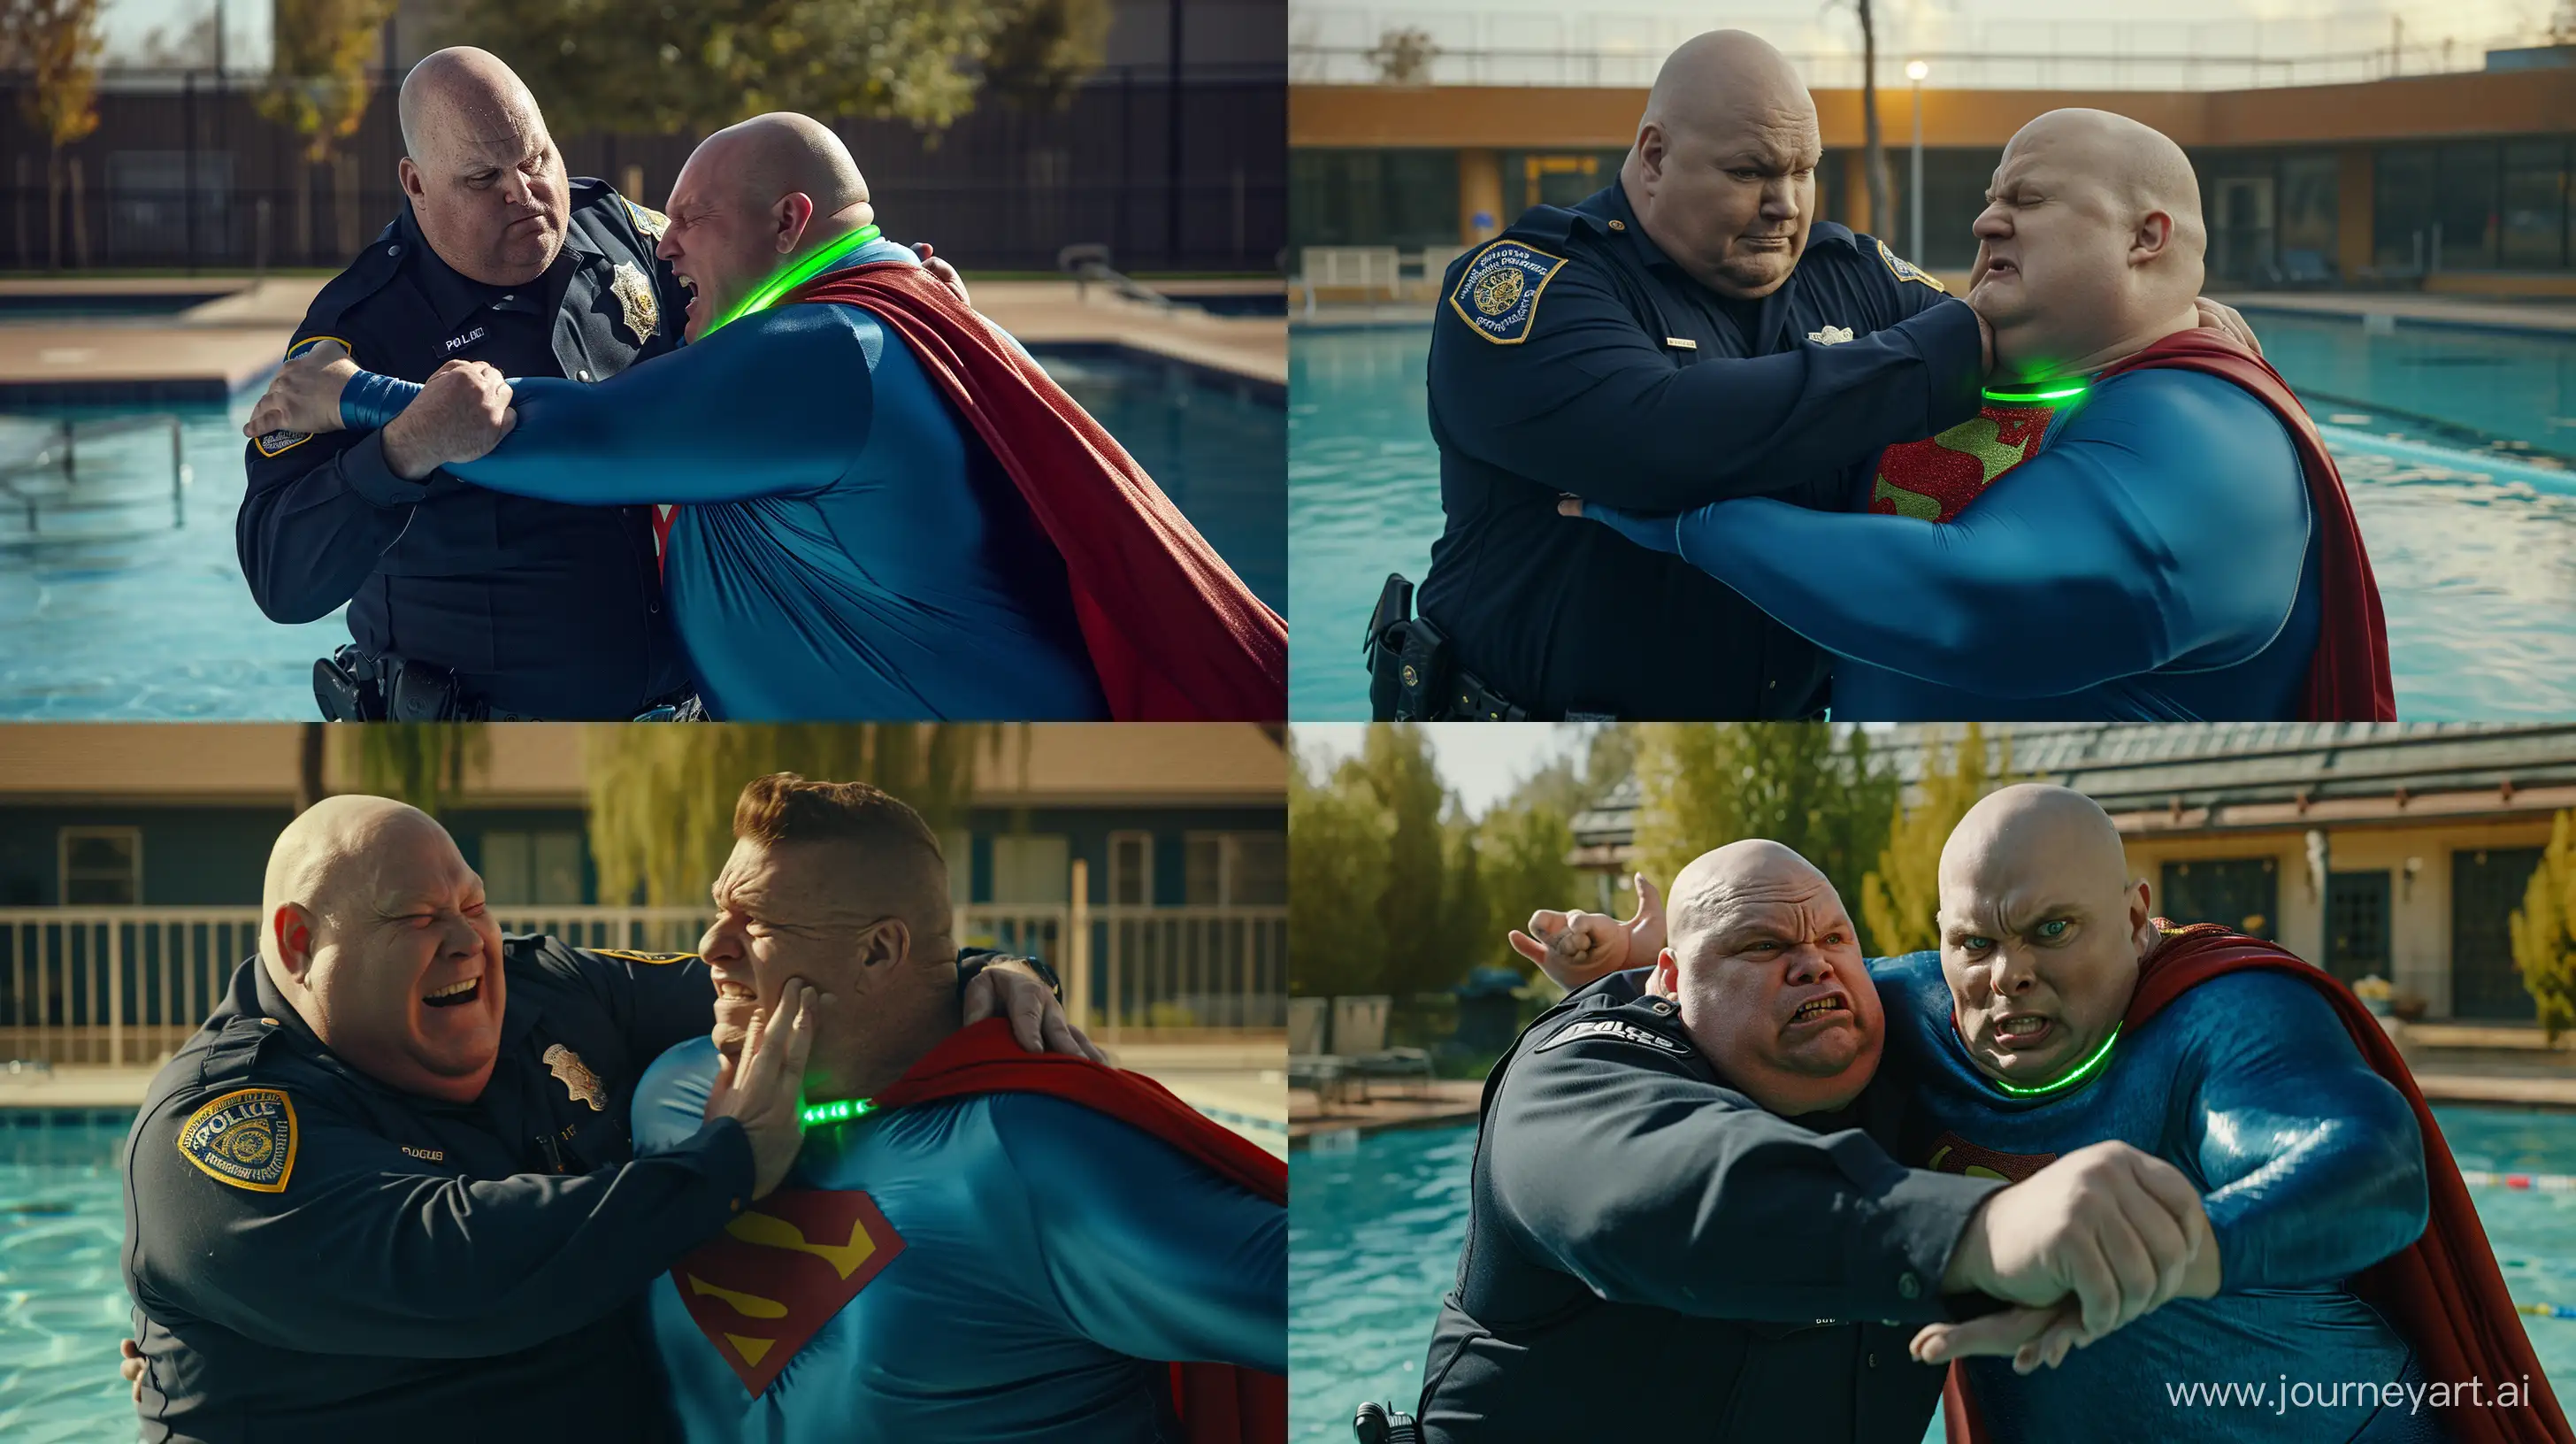 Epic-Showdown-Navy-Police-vs-Superman-in-Poolside-Battle